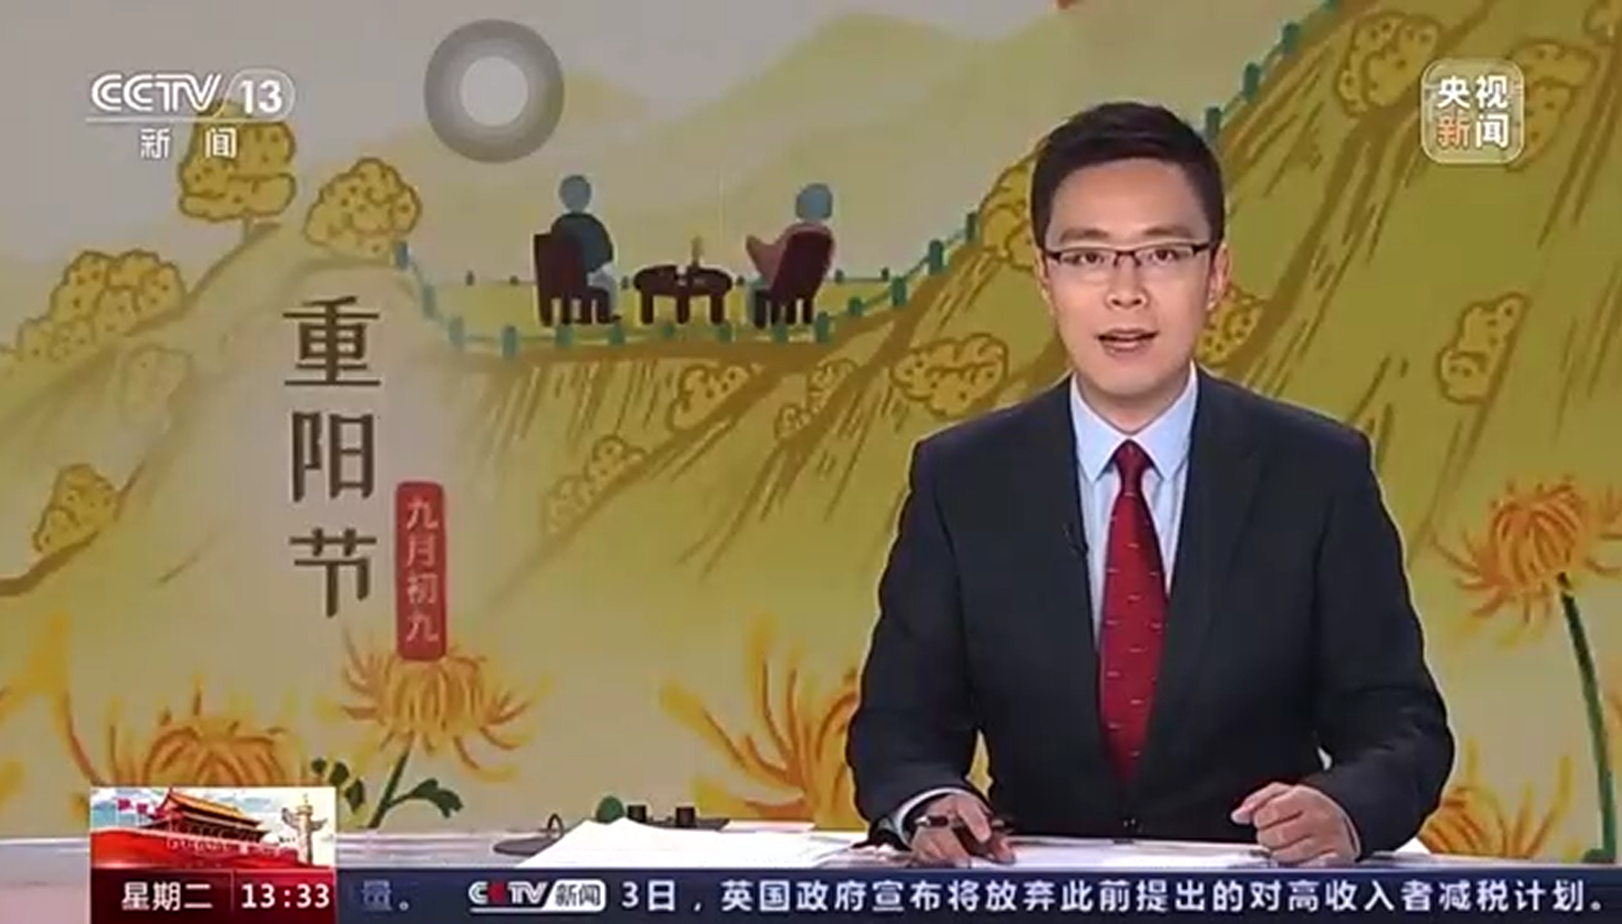 爱暖重阳 | CCTV新闻频道报道重阳节志愿活动